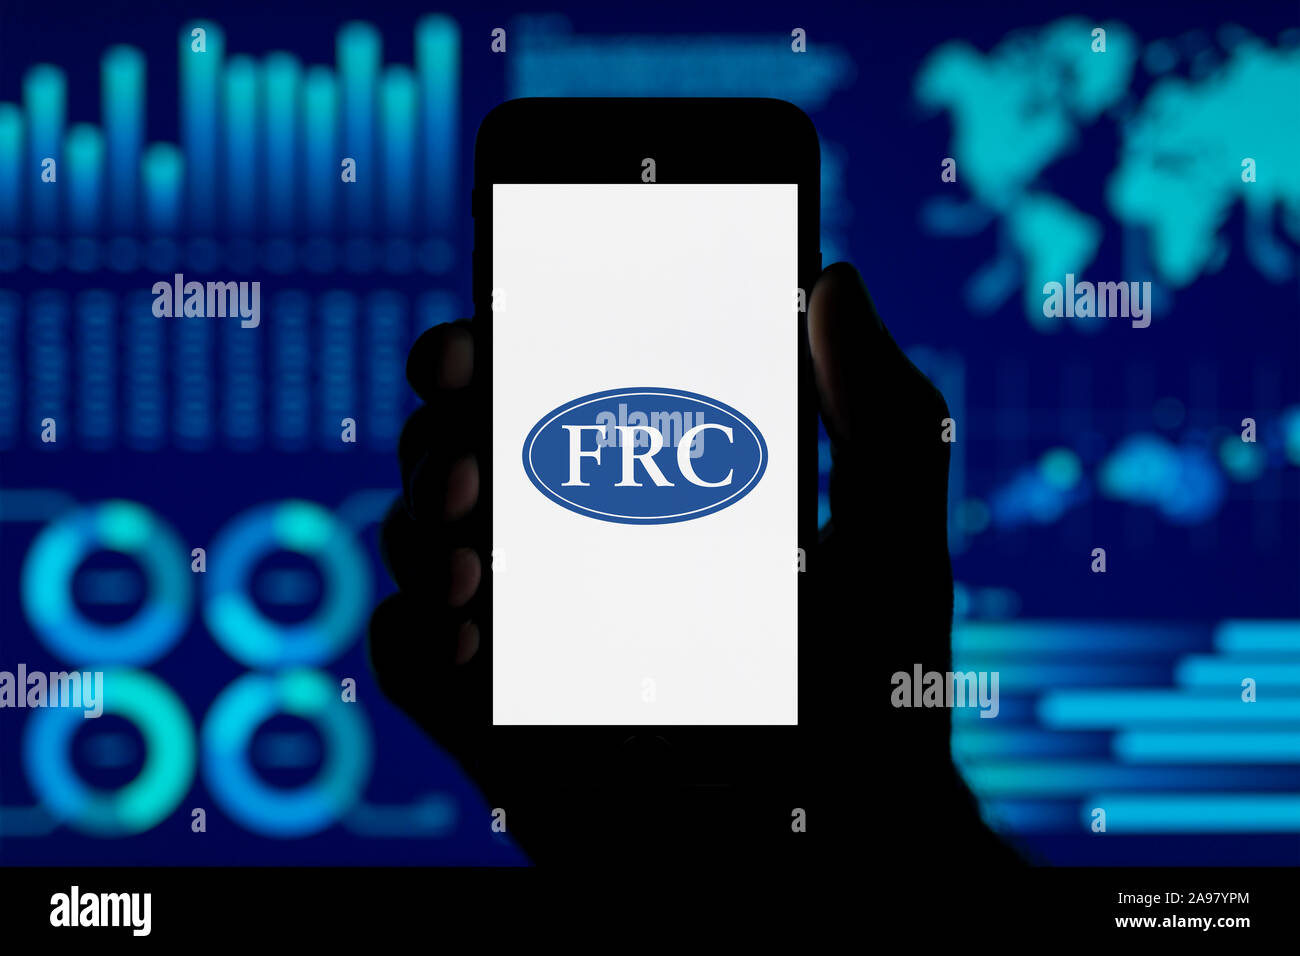 Un homme est titulaire de l'iPhone qui affiche le logo du Conseil de l'information financière, tourné dans un style de visualisation de données (fond usage éditorial uniquement). Banque D'Images